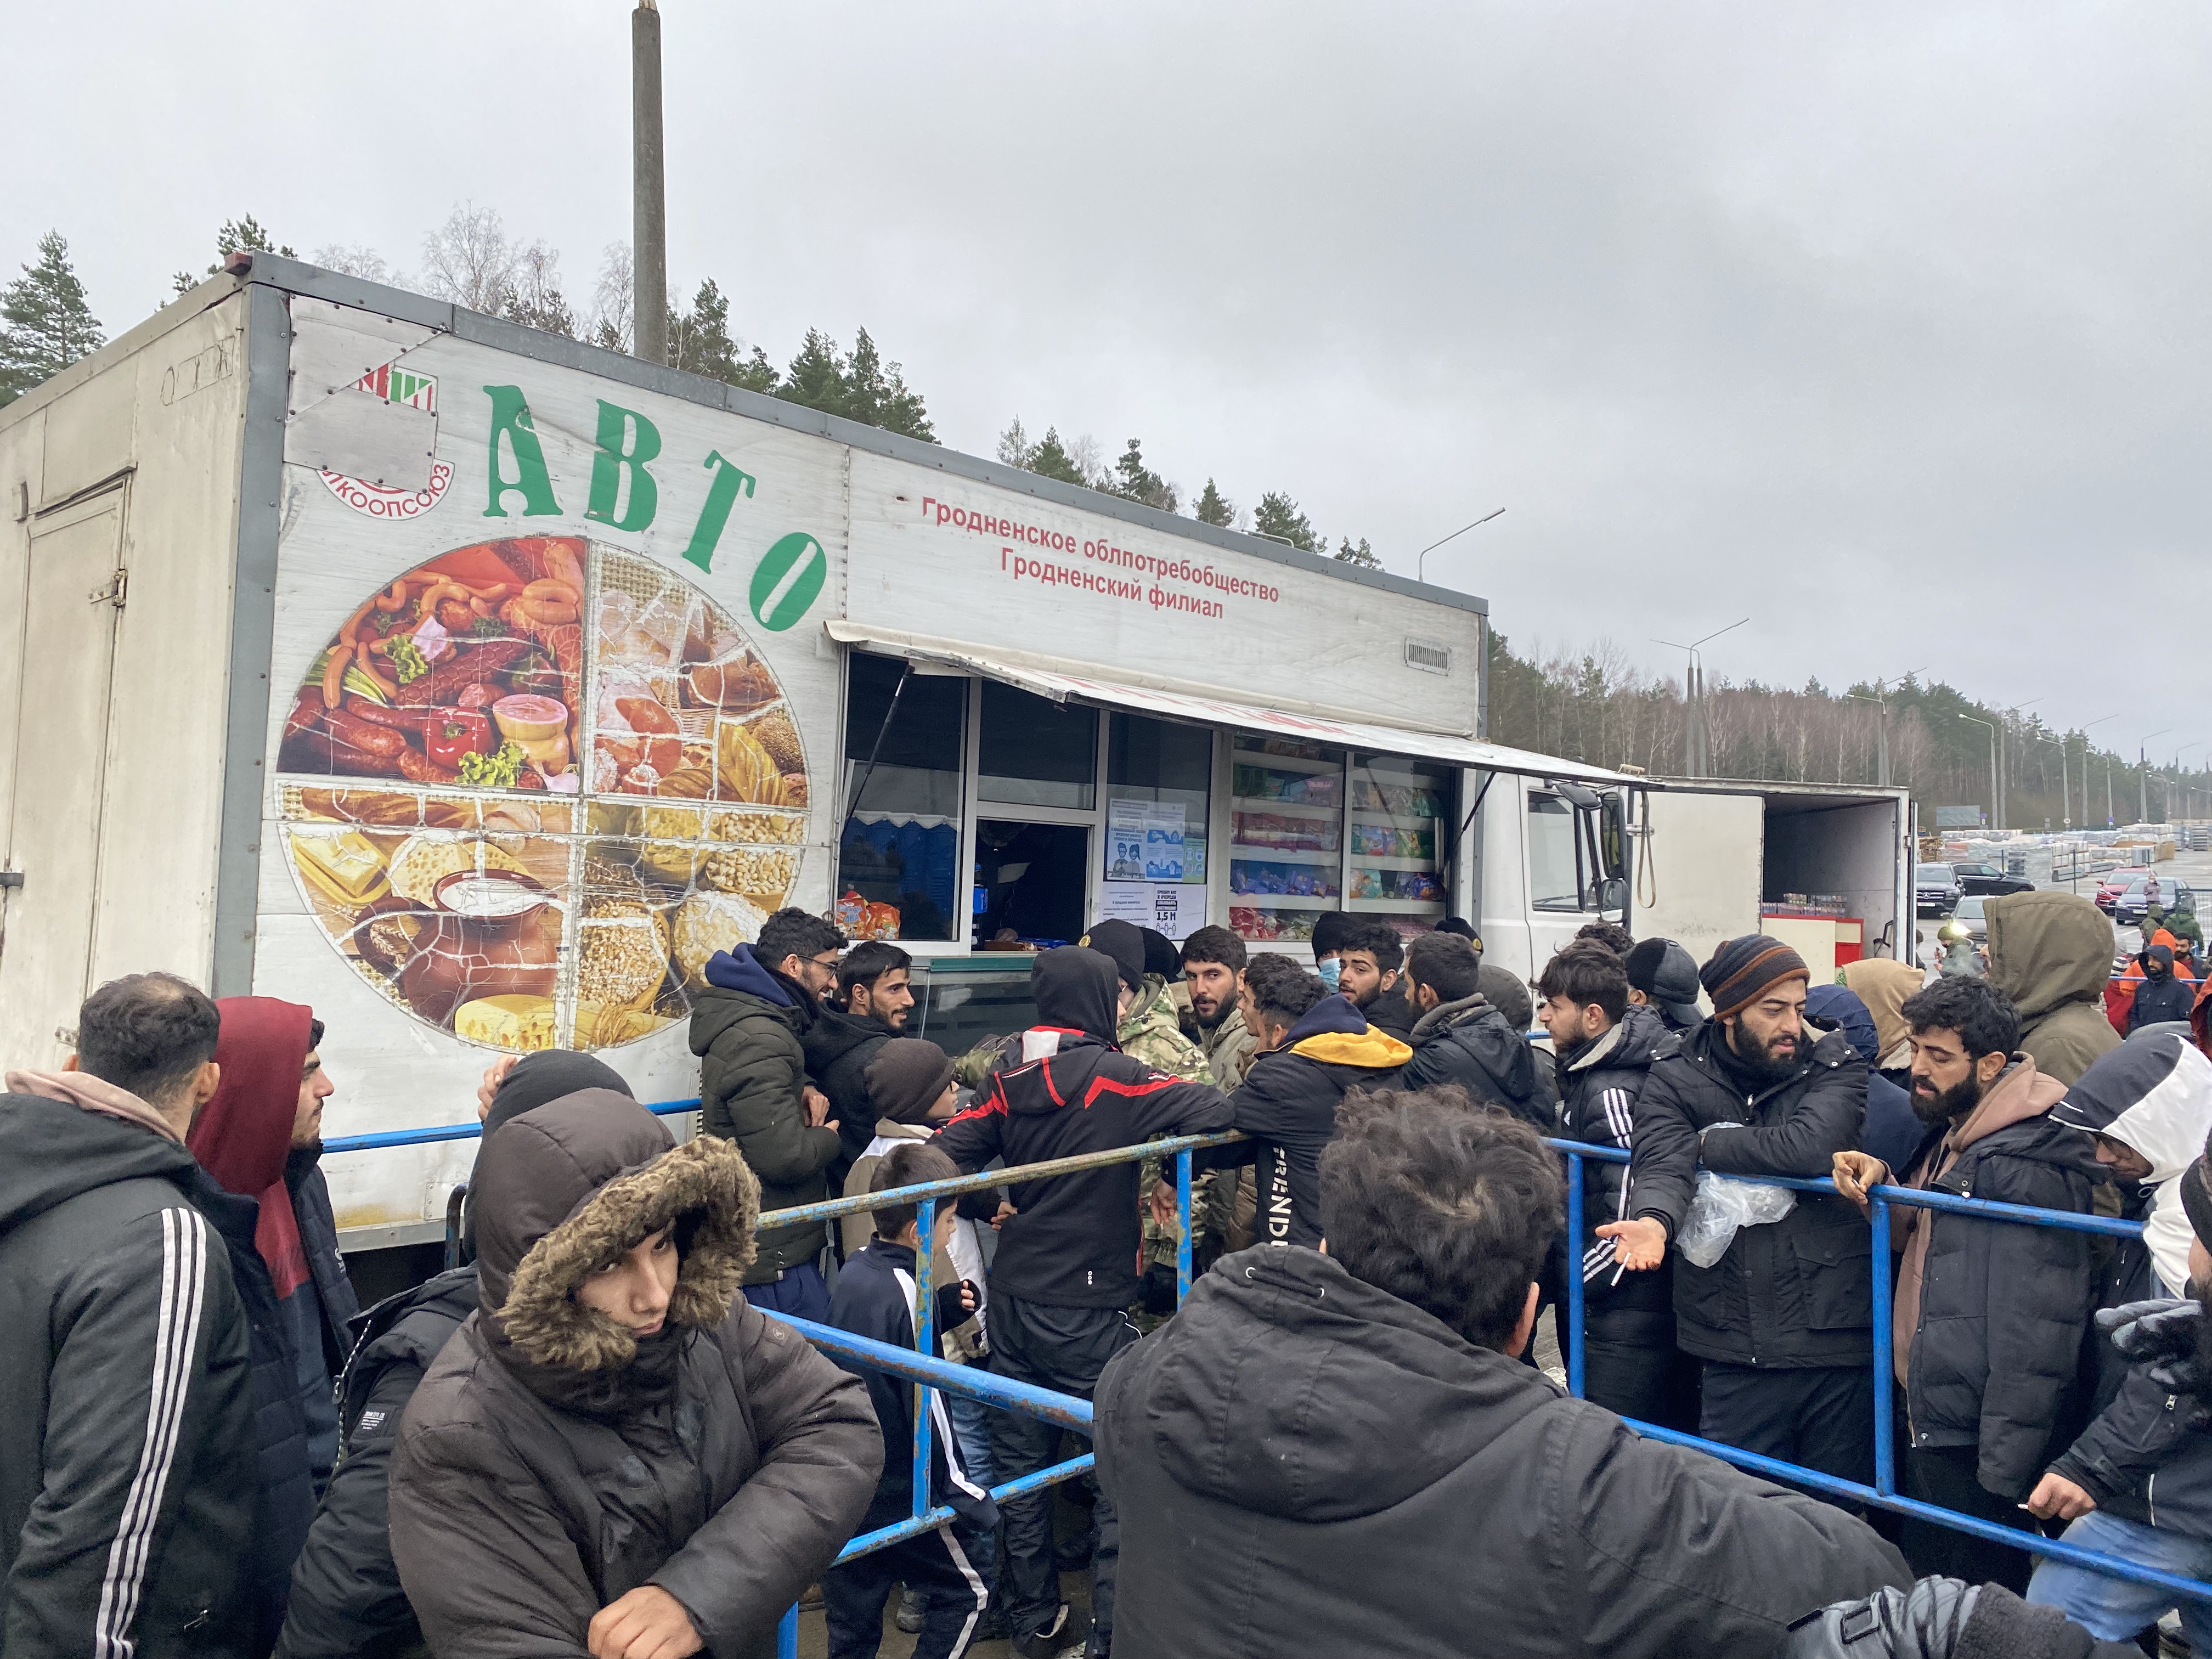 Im belarusischen Migrantenlager stehen Menschen an einem Foodtruck an (Quelle: Martha Wilczynski)